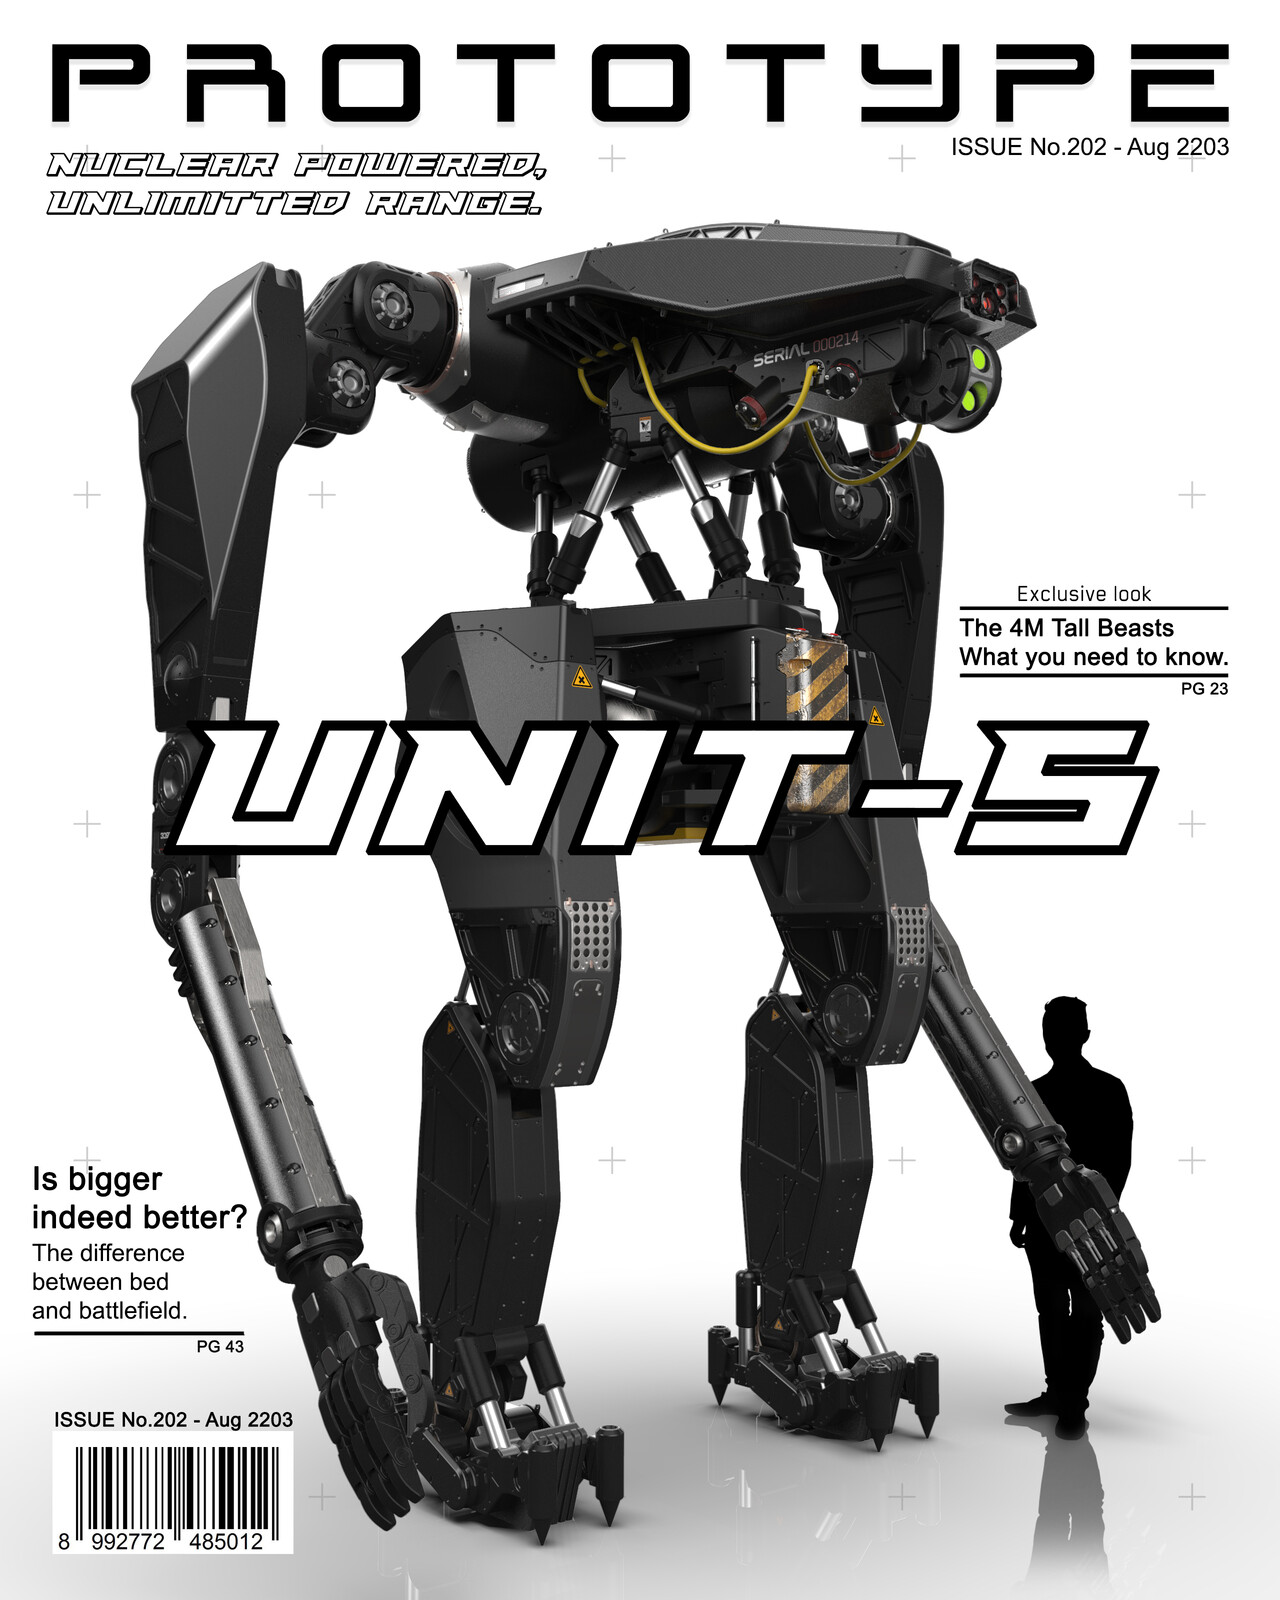 UNIT-5 Robot